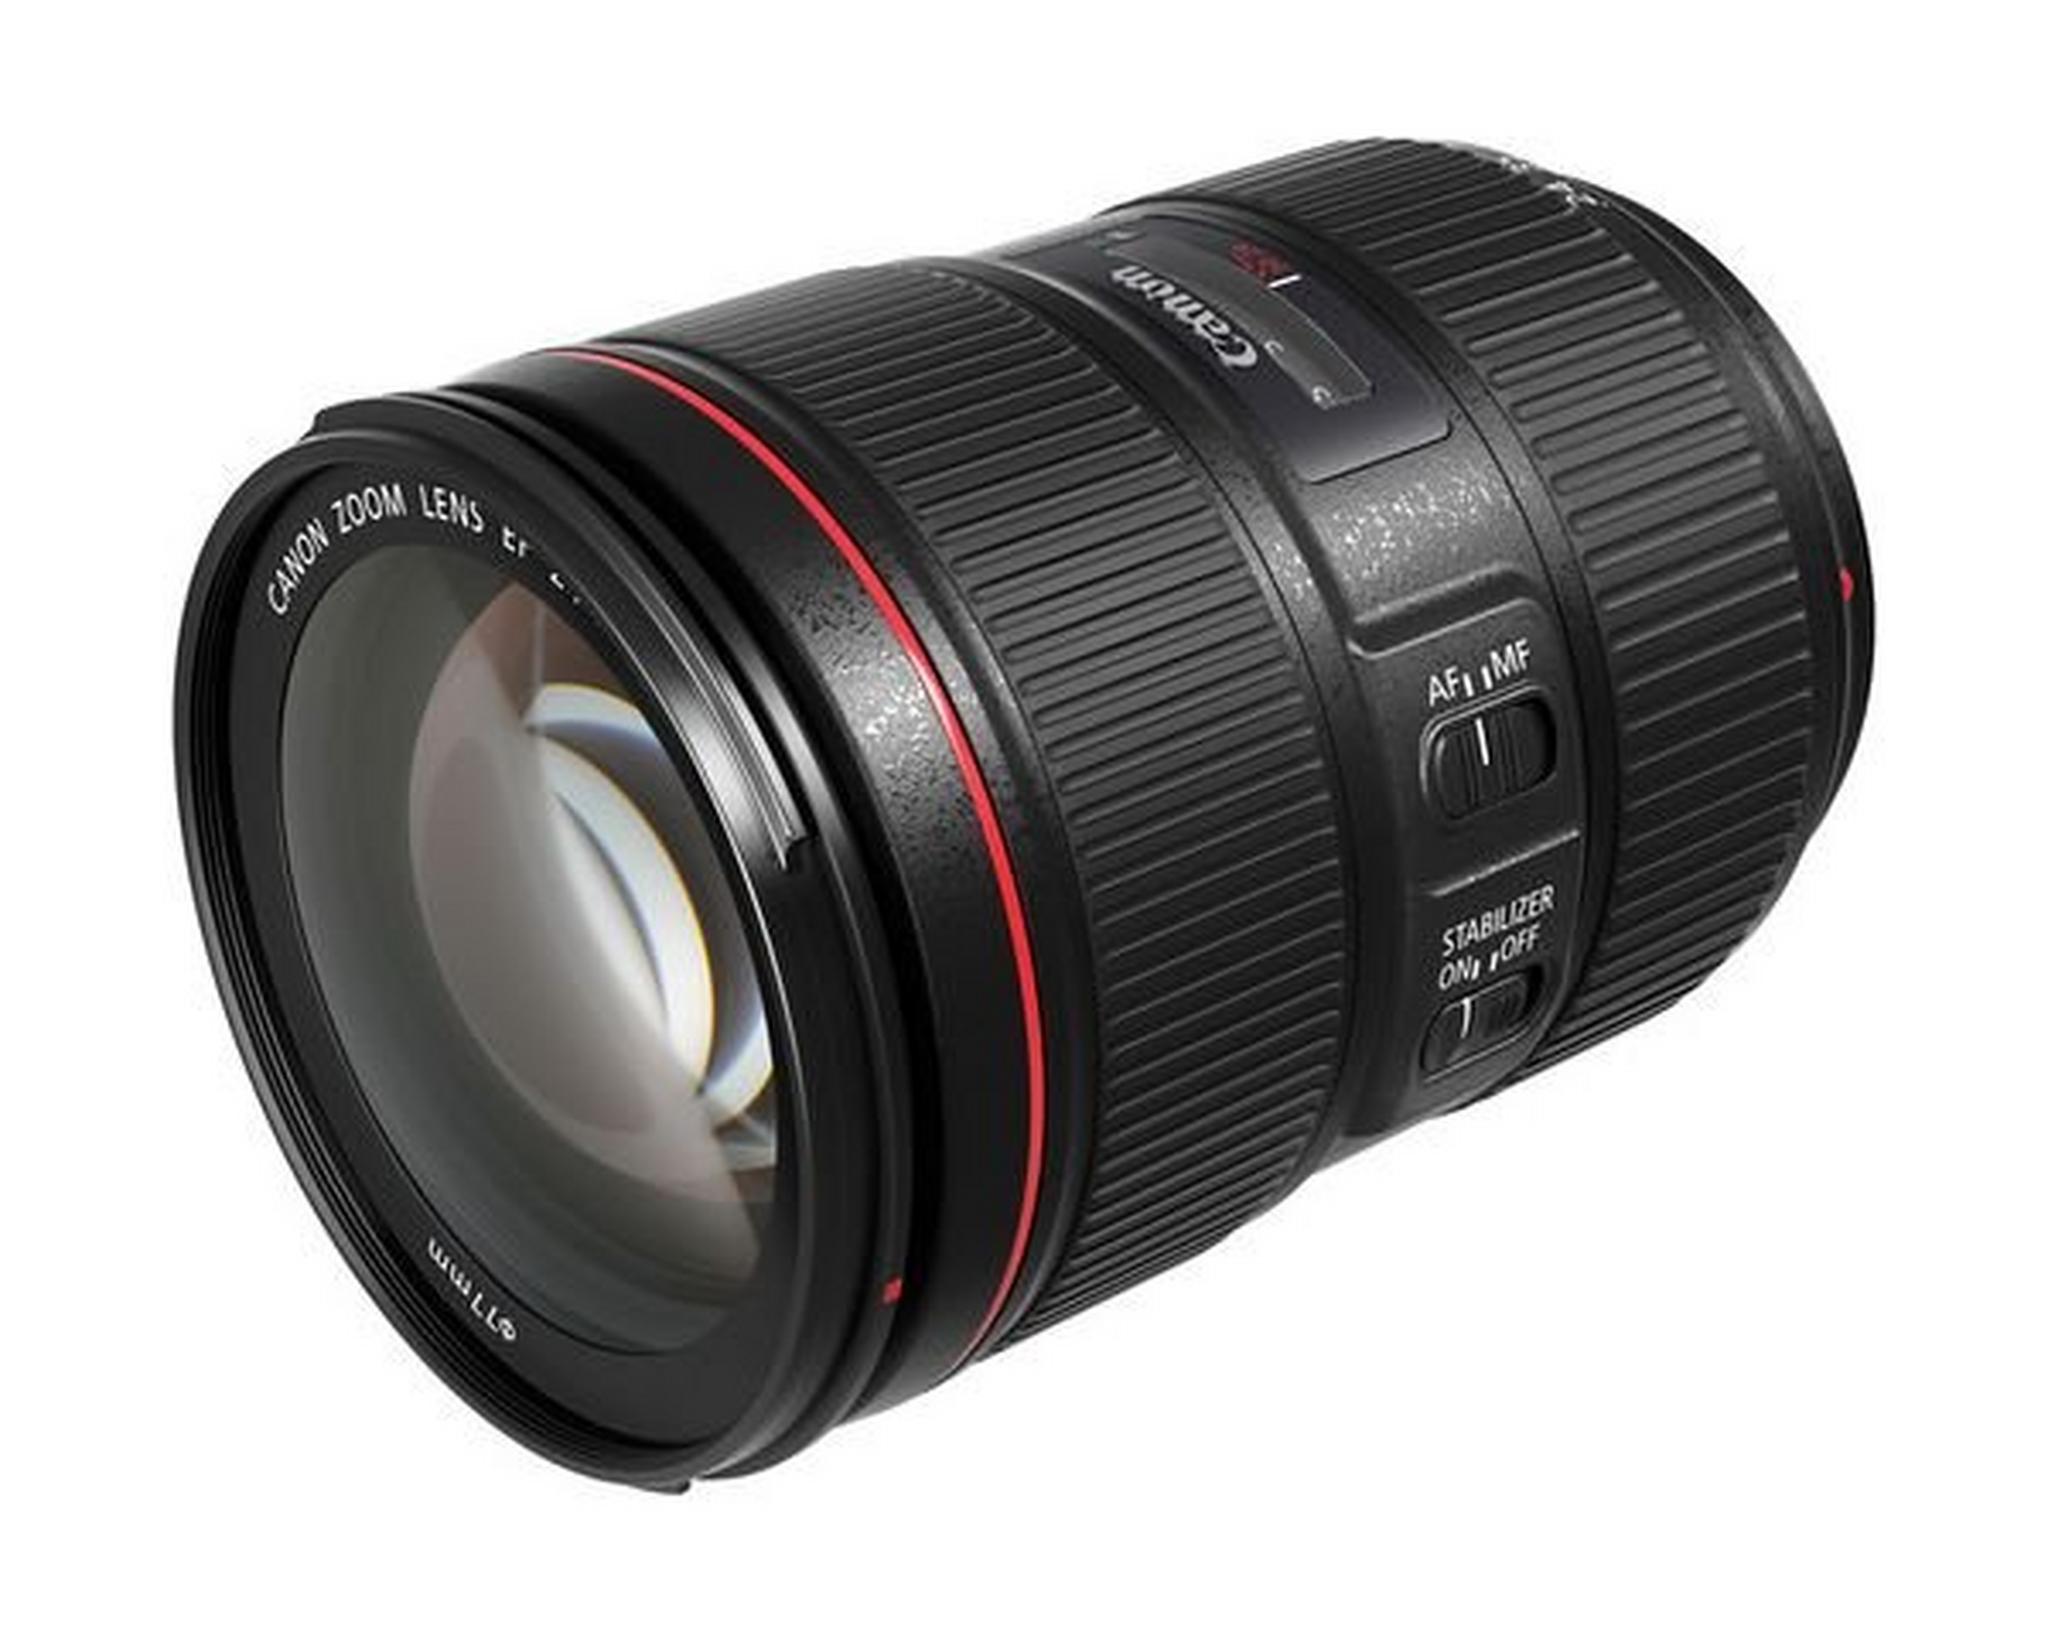 Canon EF 24-105mm f/4L IS USM Zoom Lens